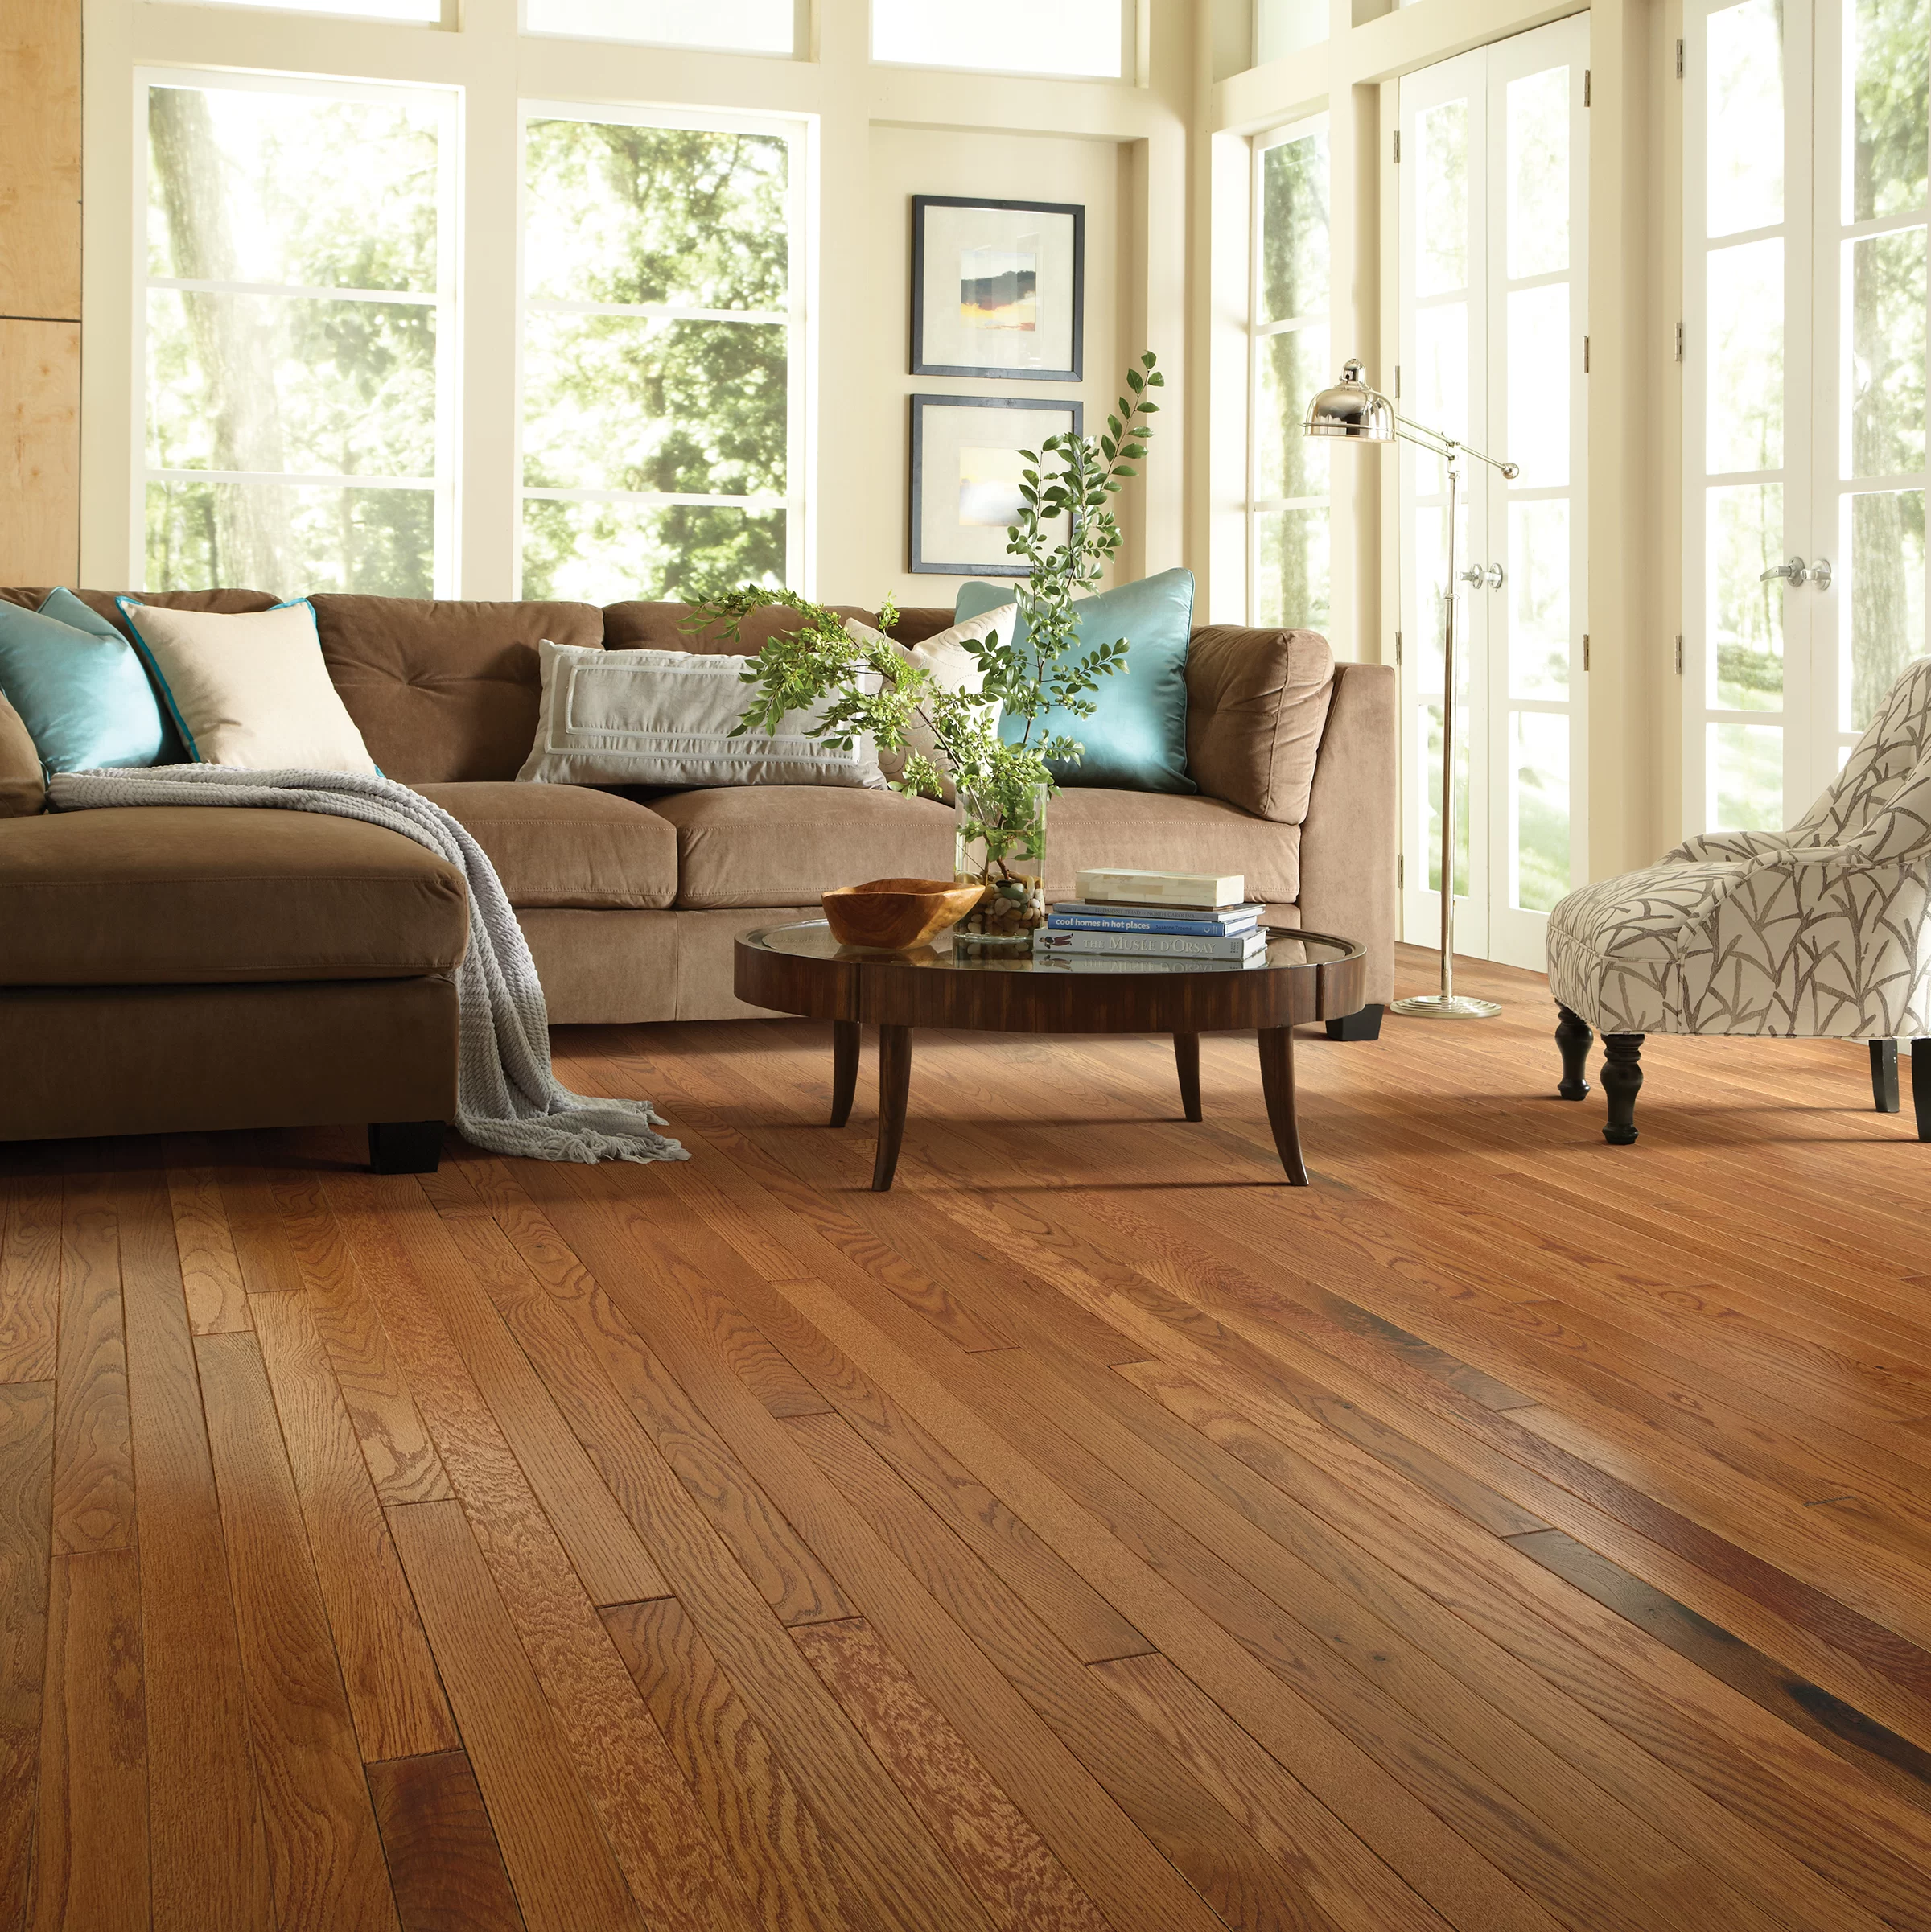 Wood-based | Solid hardwood flooring